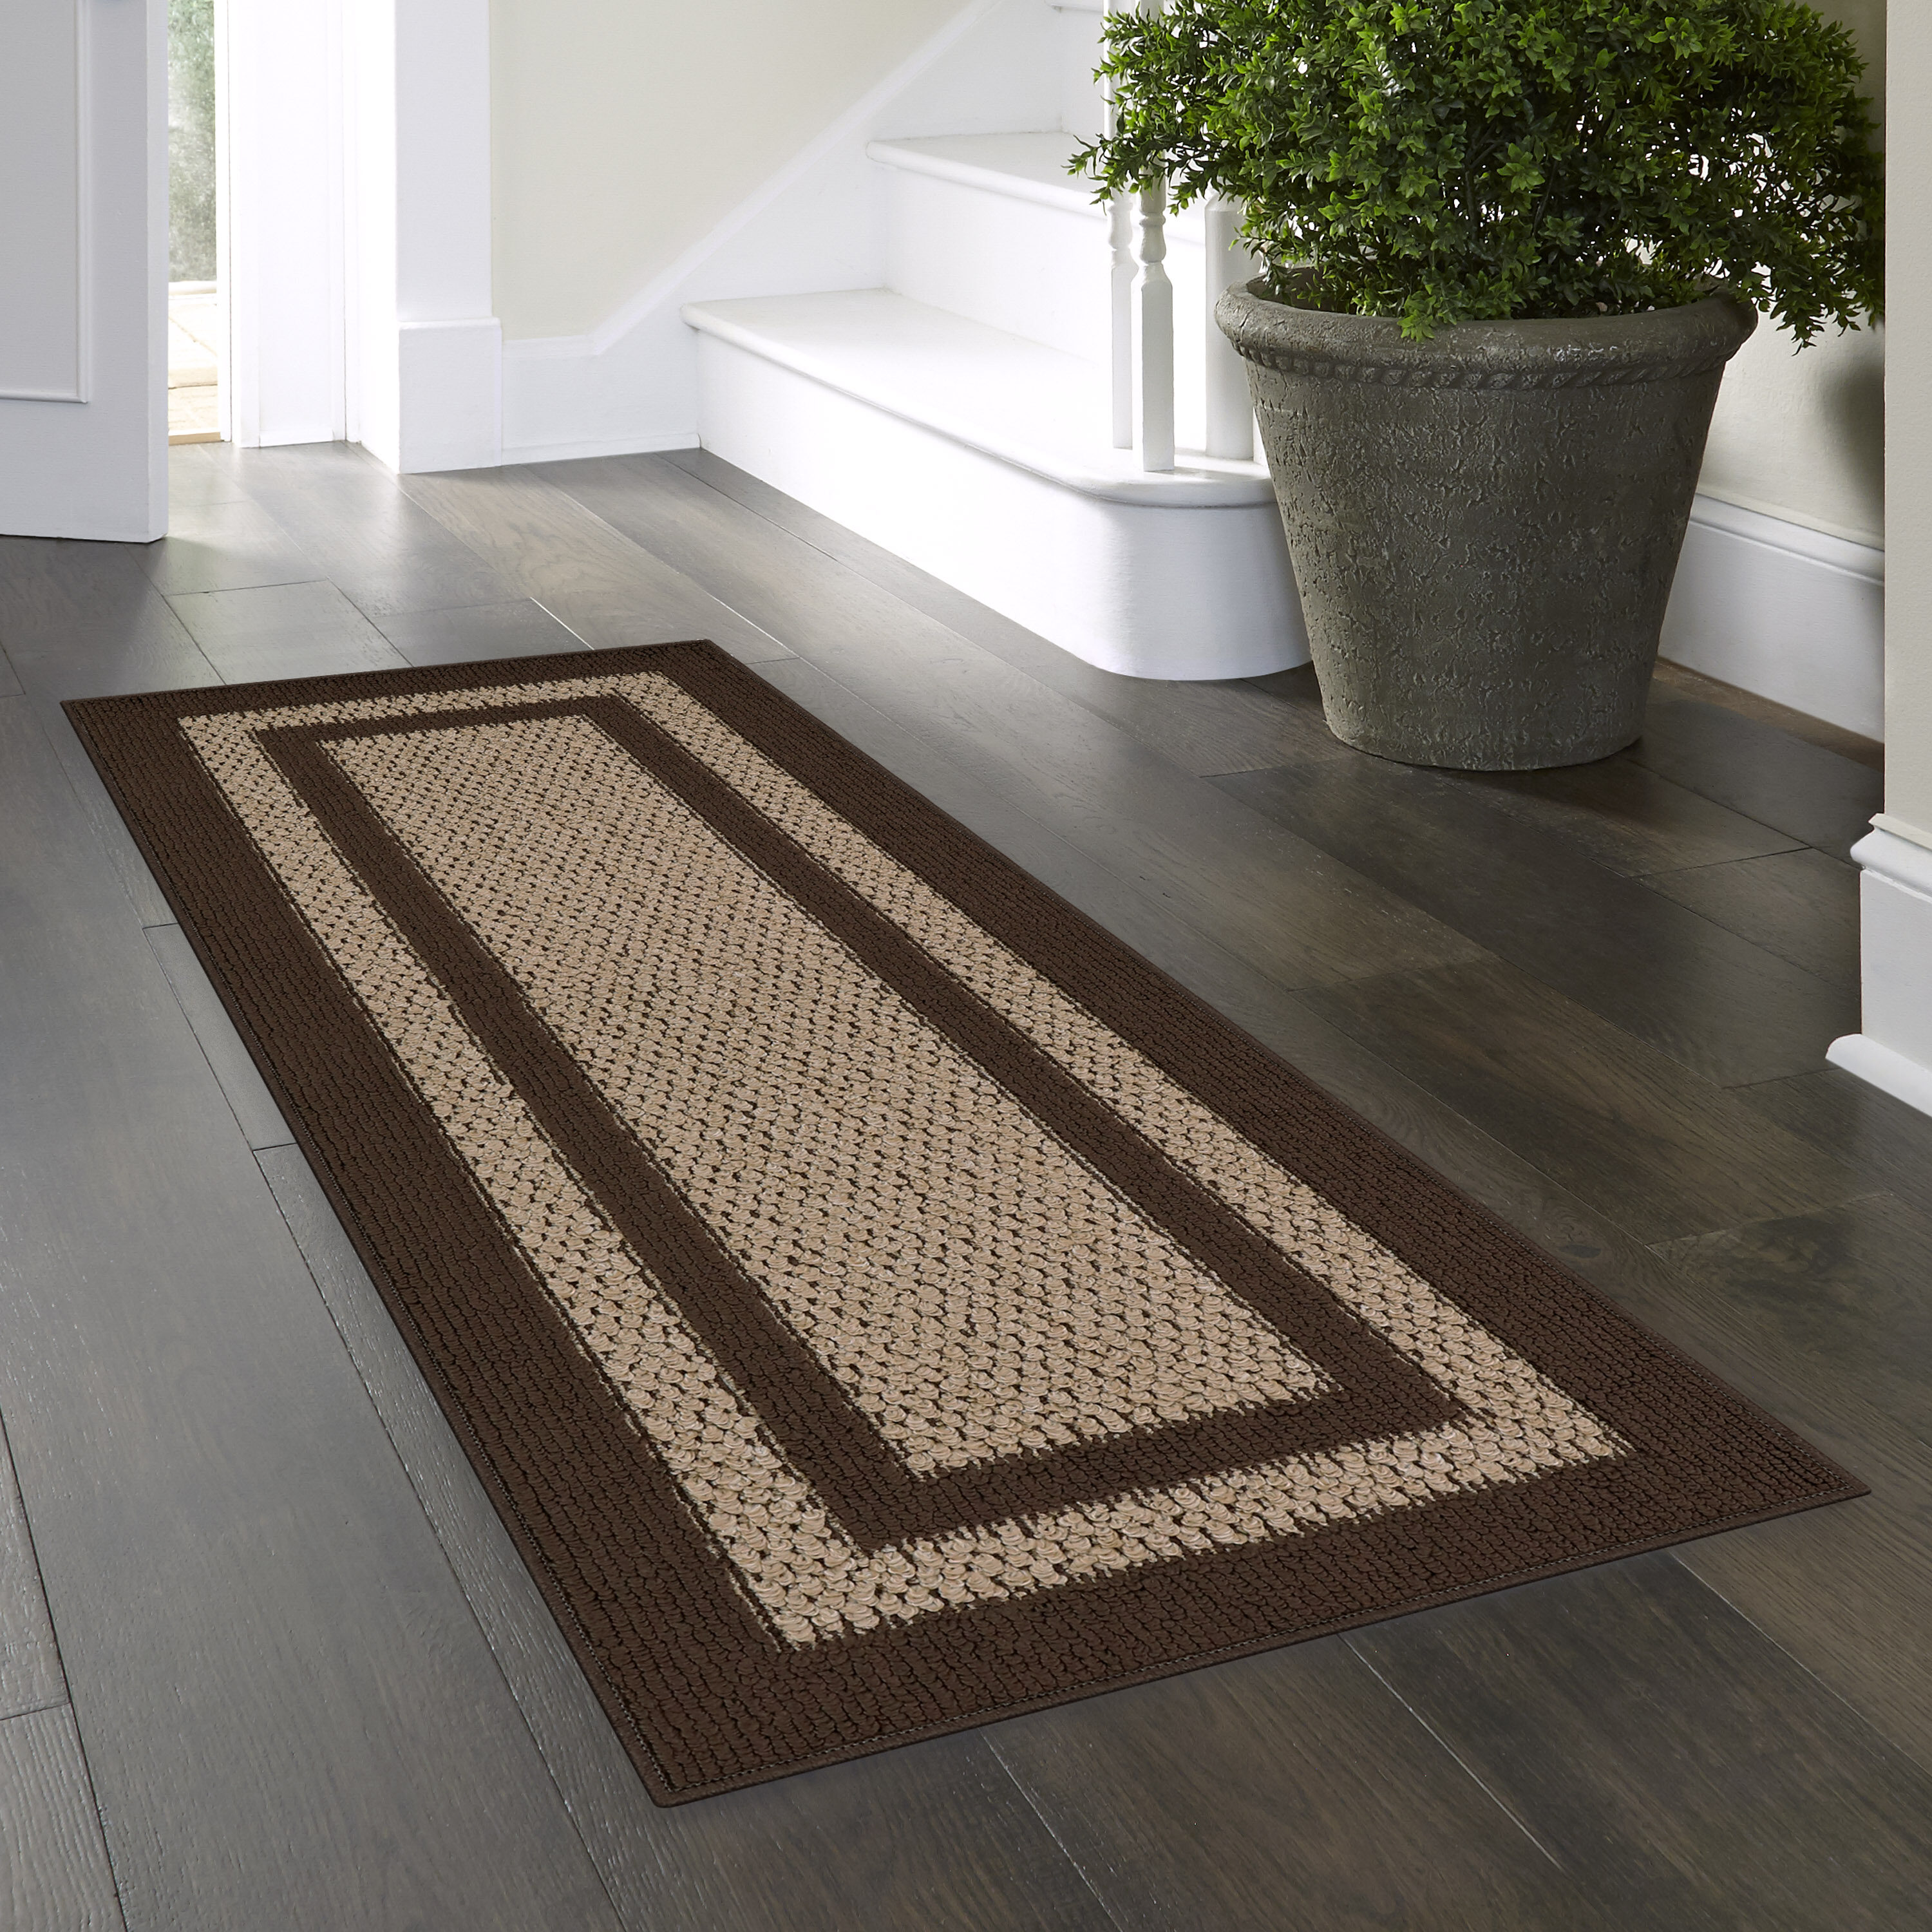 Light Brown and Black Cotton Knitted Mat floor mats and door mats